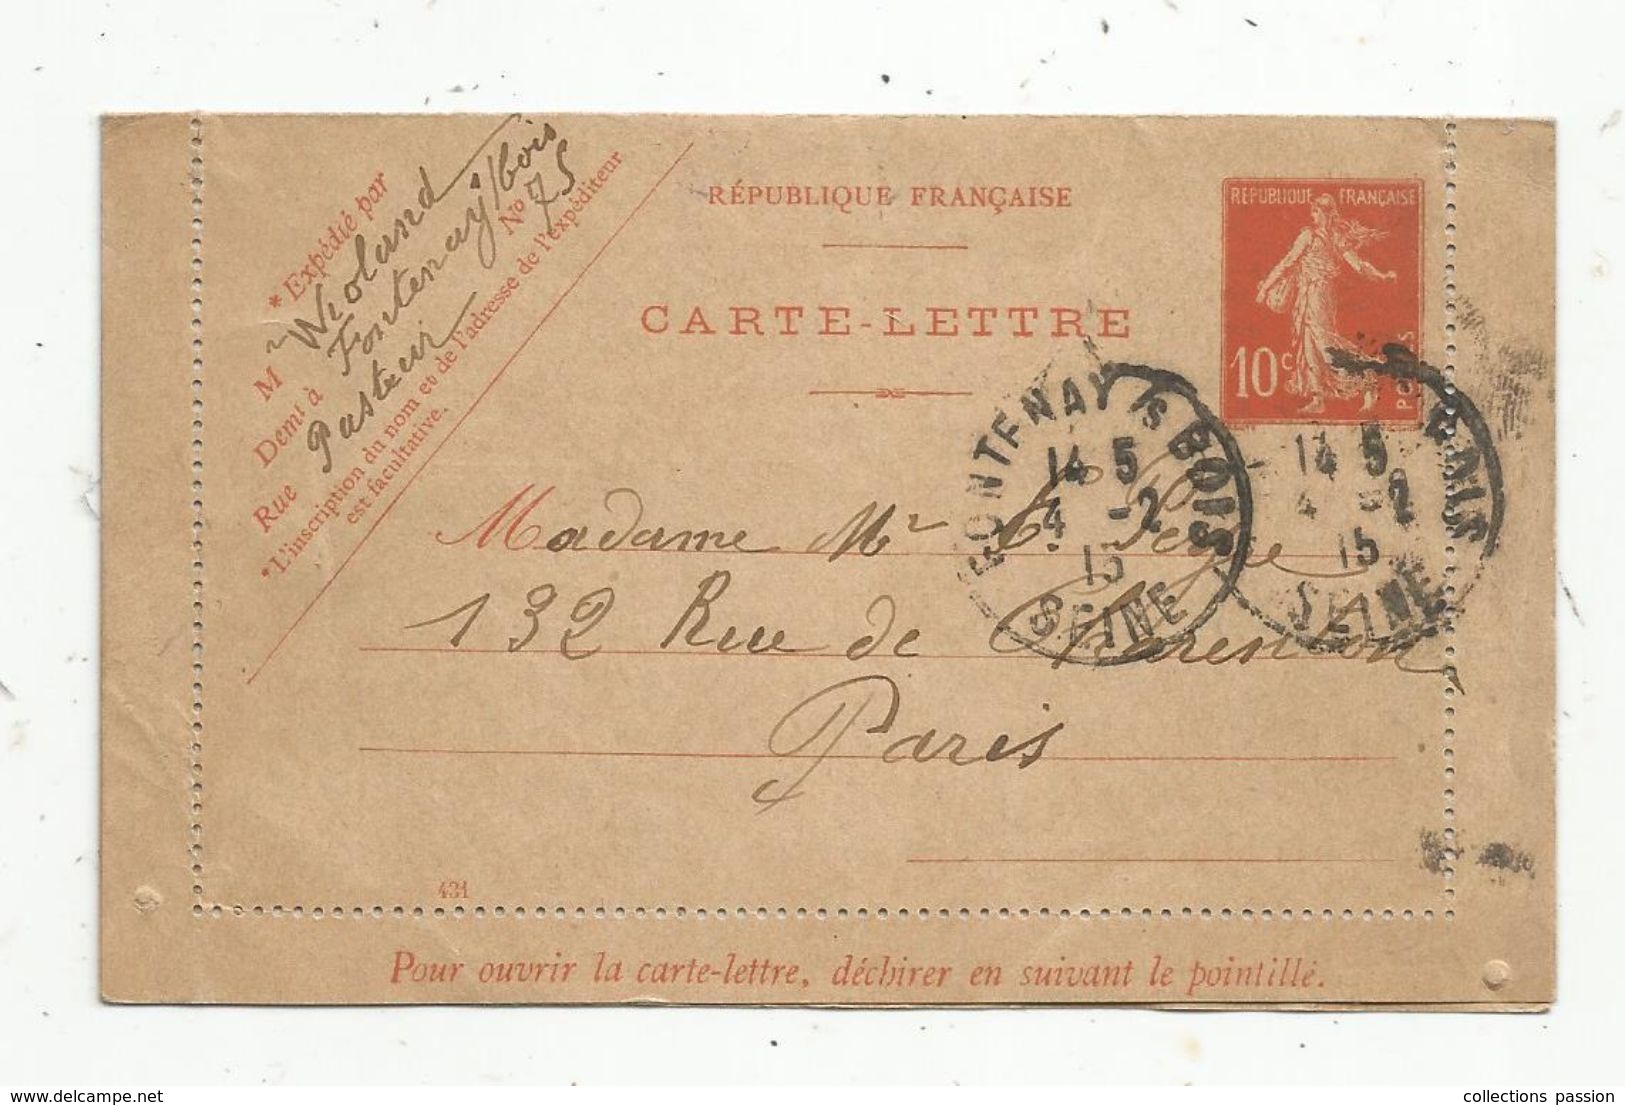 Carte Lettre,1915,  ENTIER POSTAL, 10c , FONTENAY S/ BOIS. - Cartes-lettres